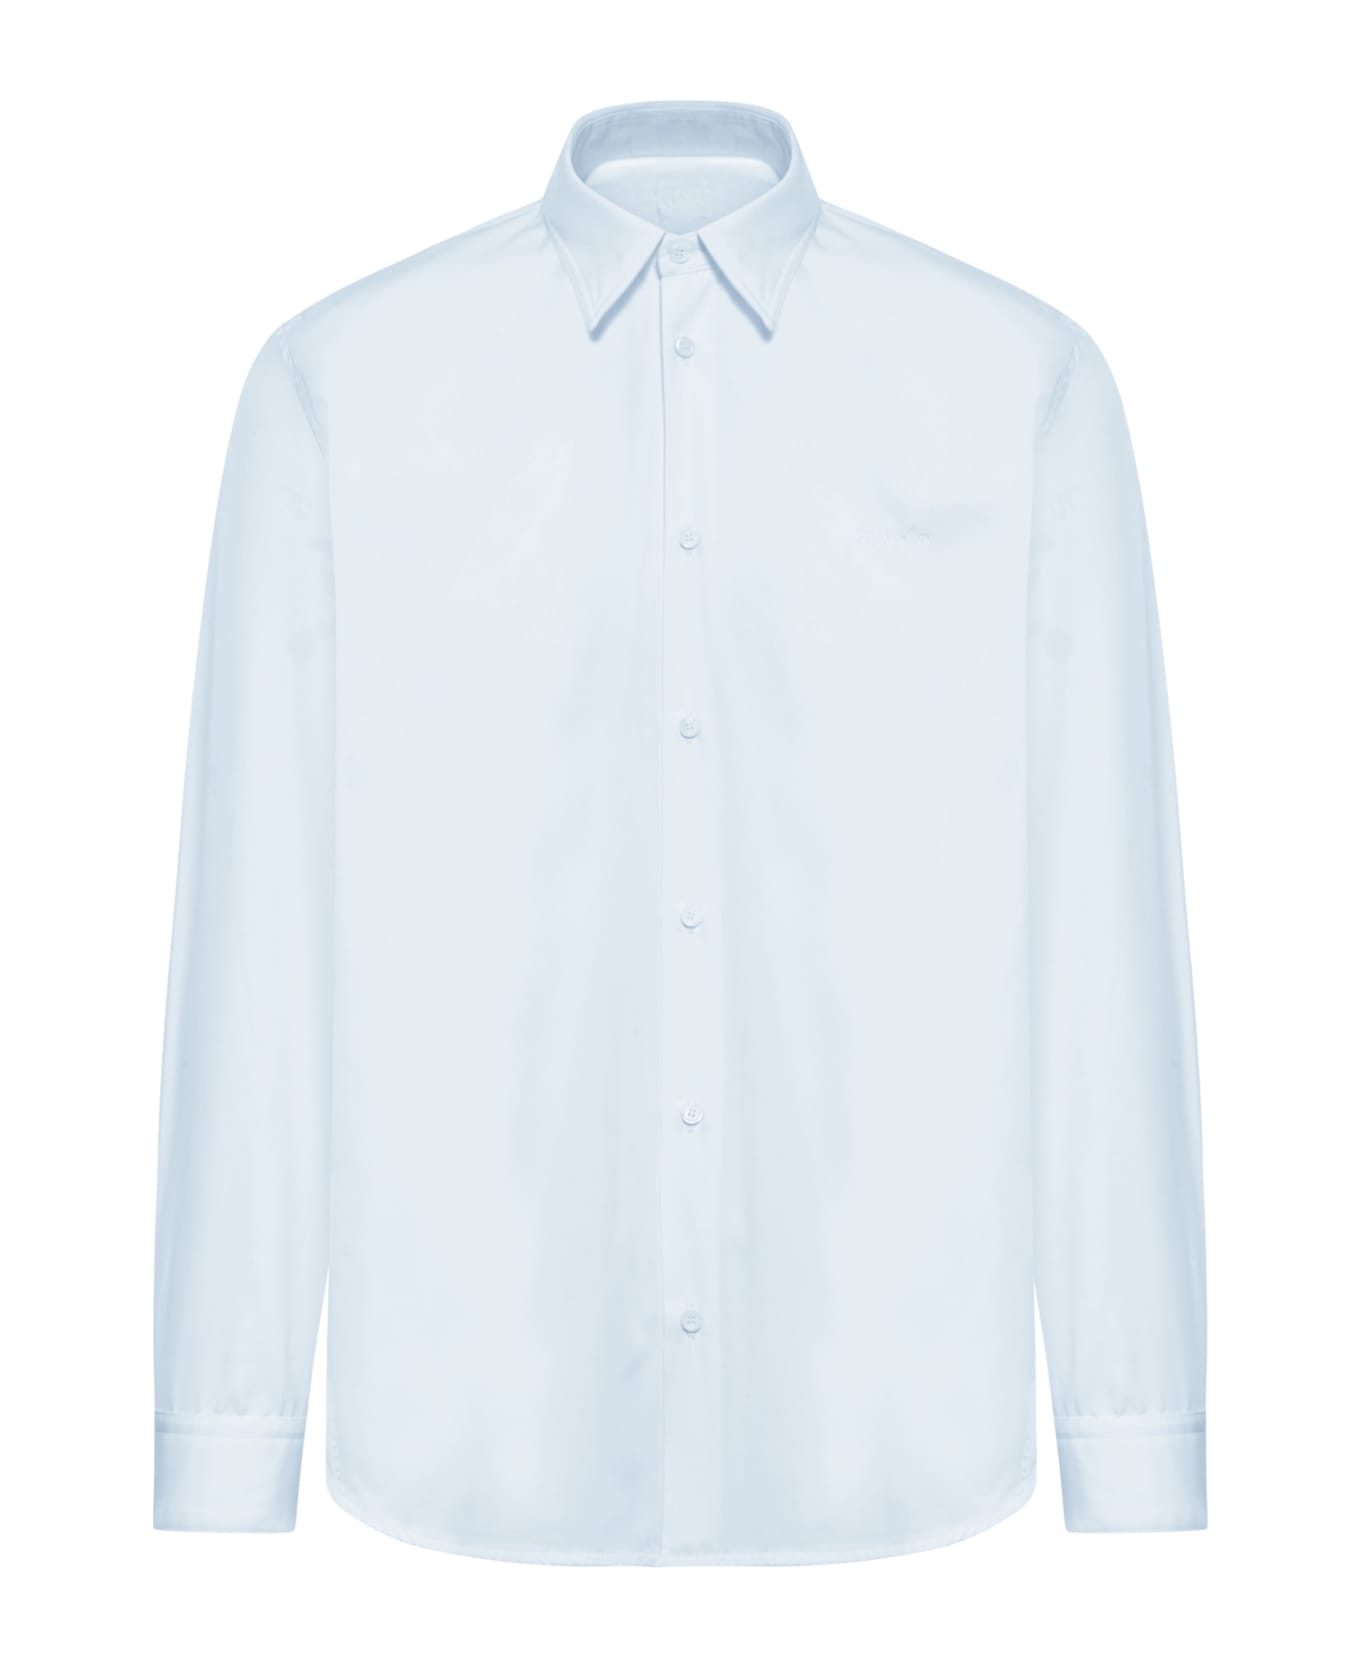 OAMC Mark Shirt, Scribble Patch - Light Blue